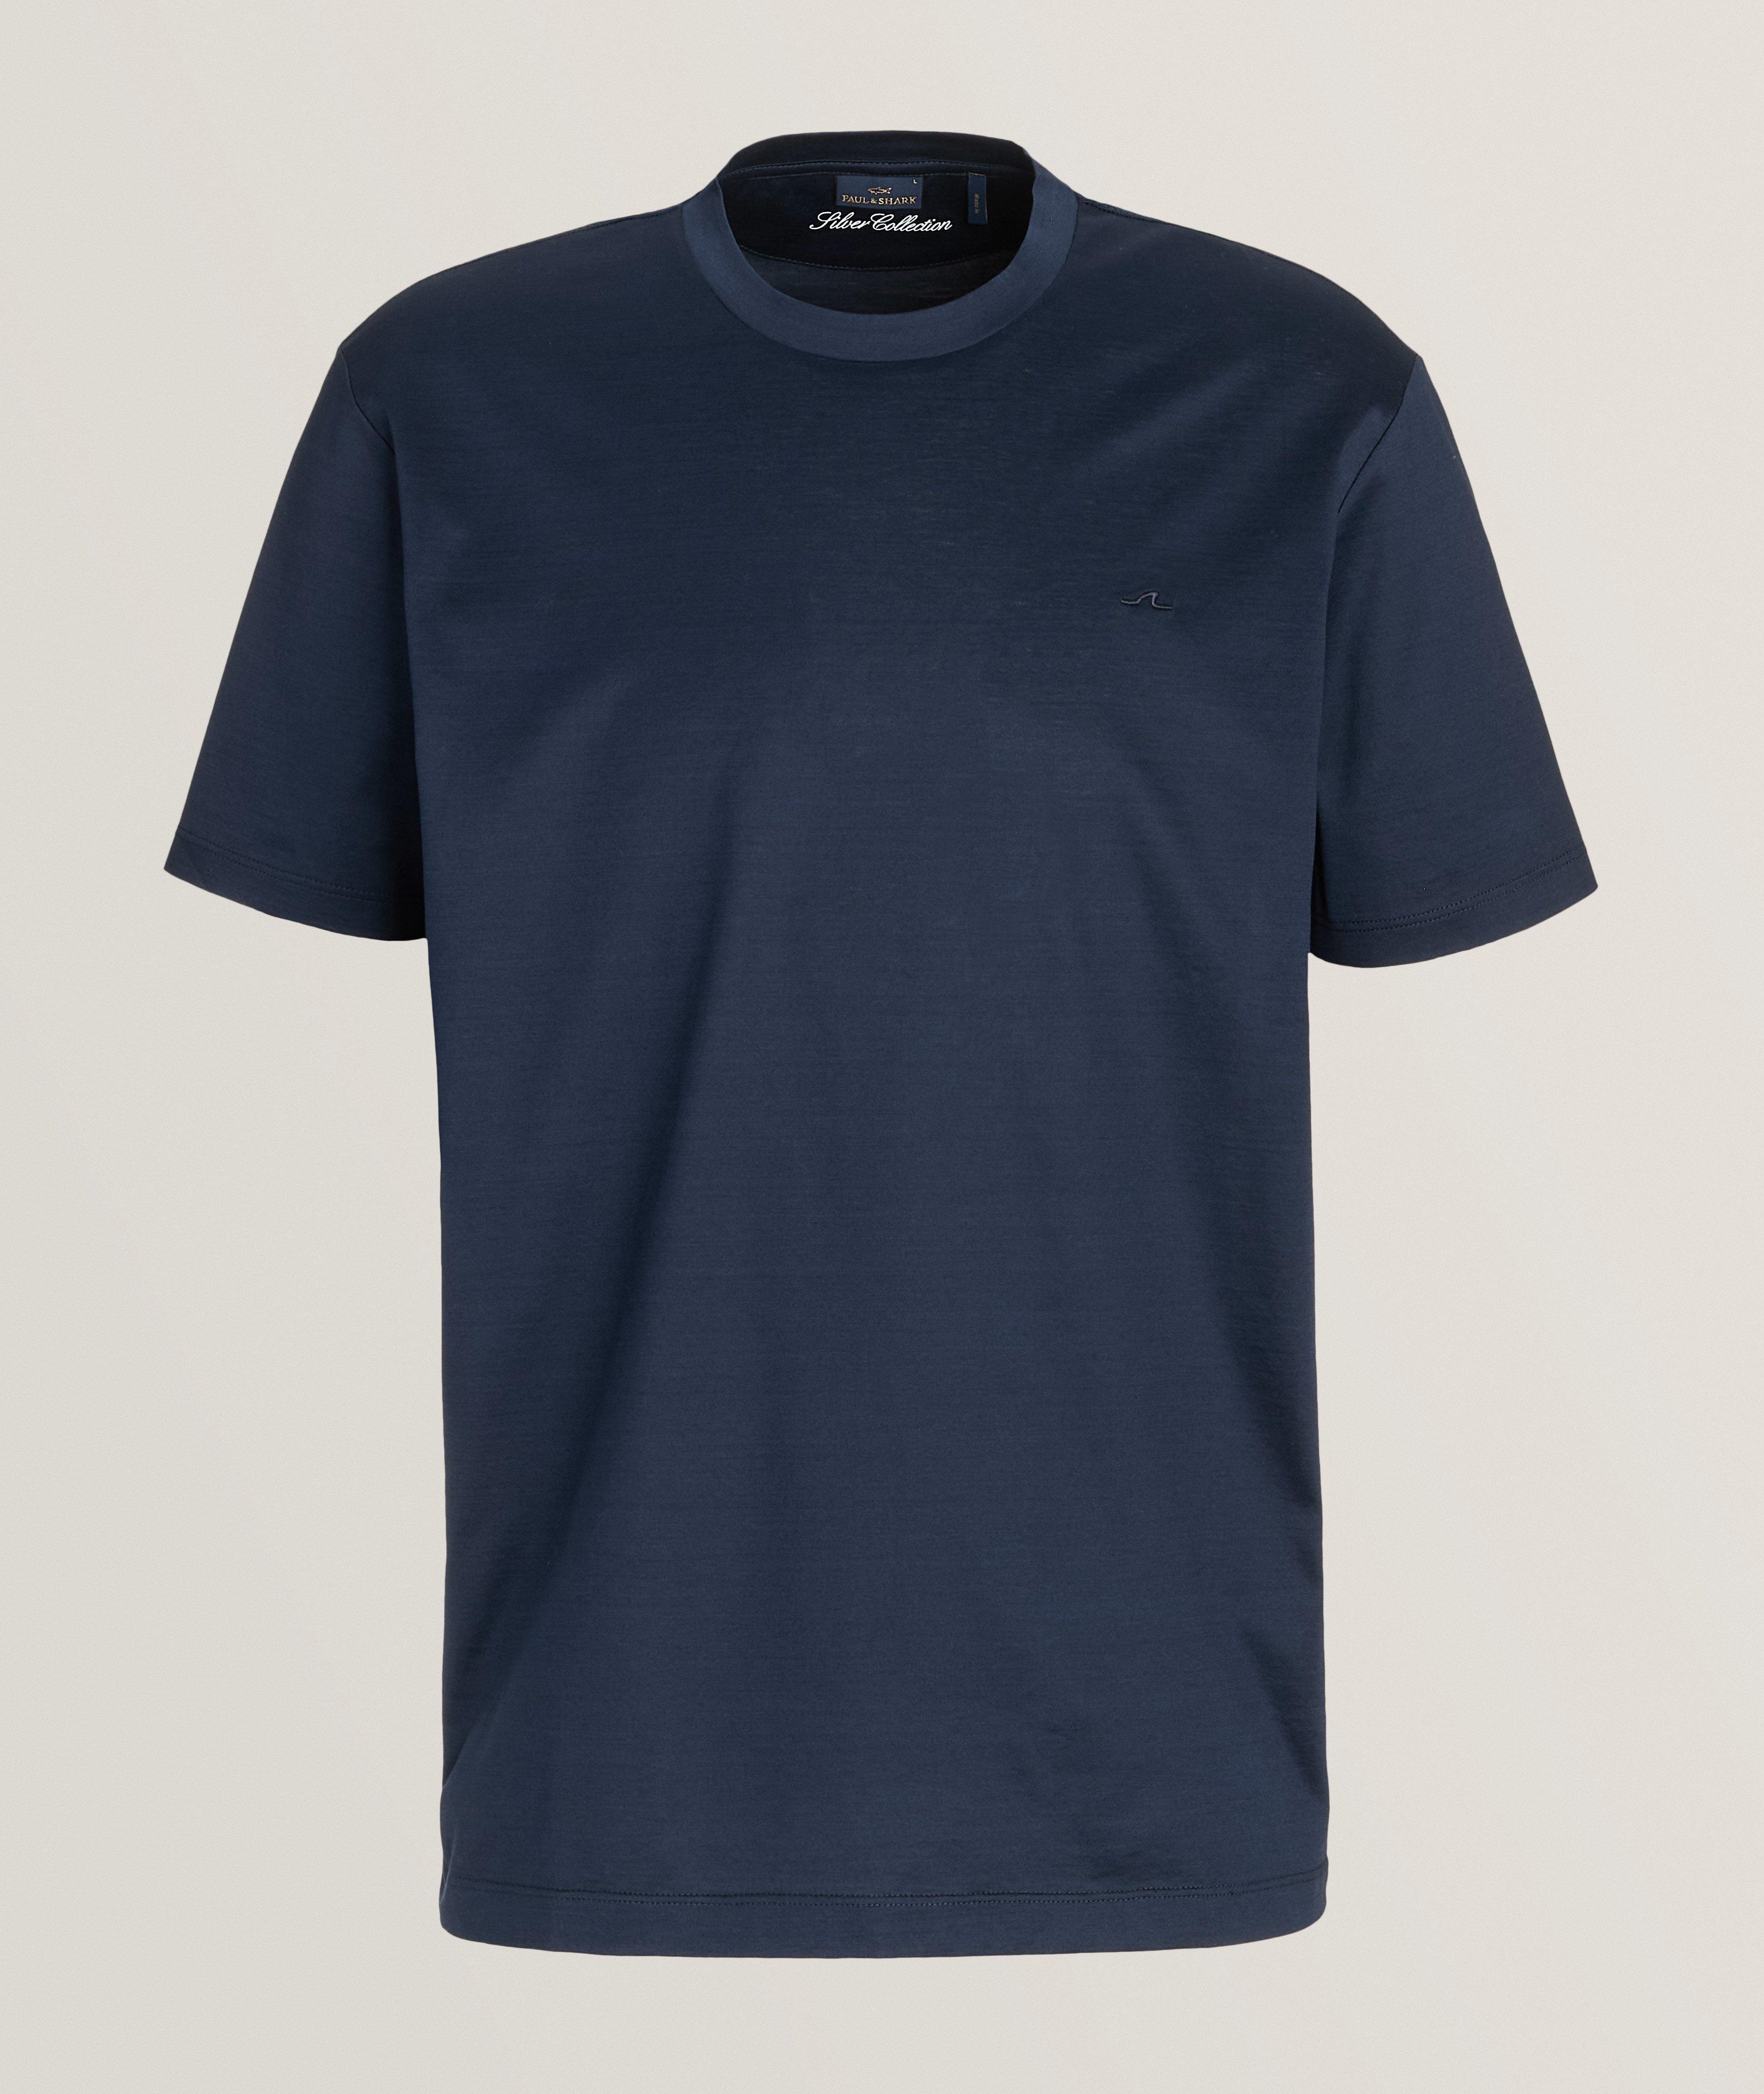 T-shirt en jersey de coton image 0